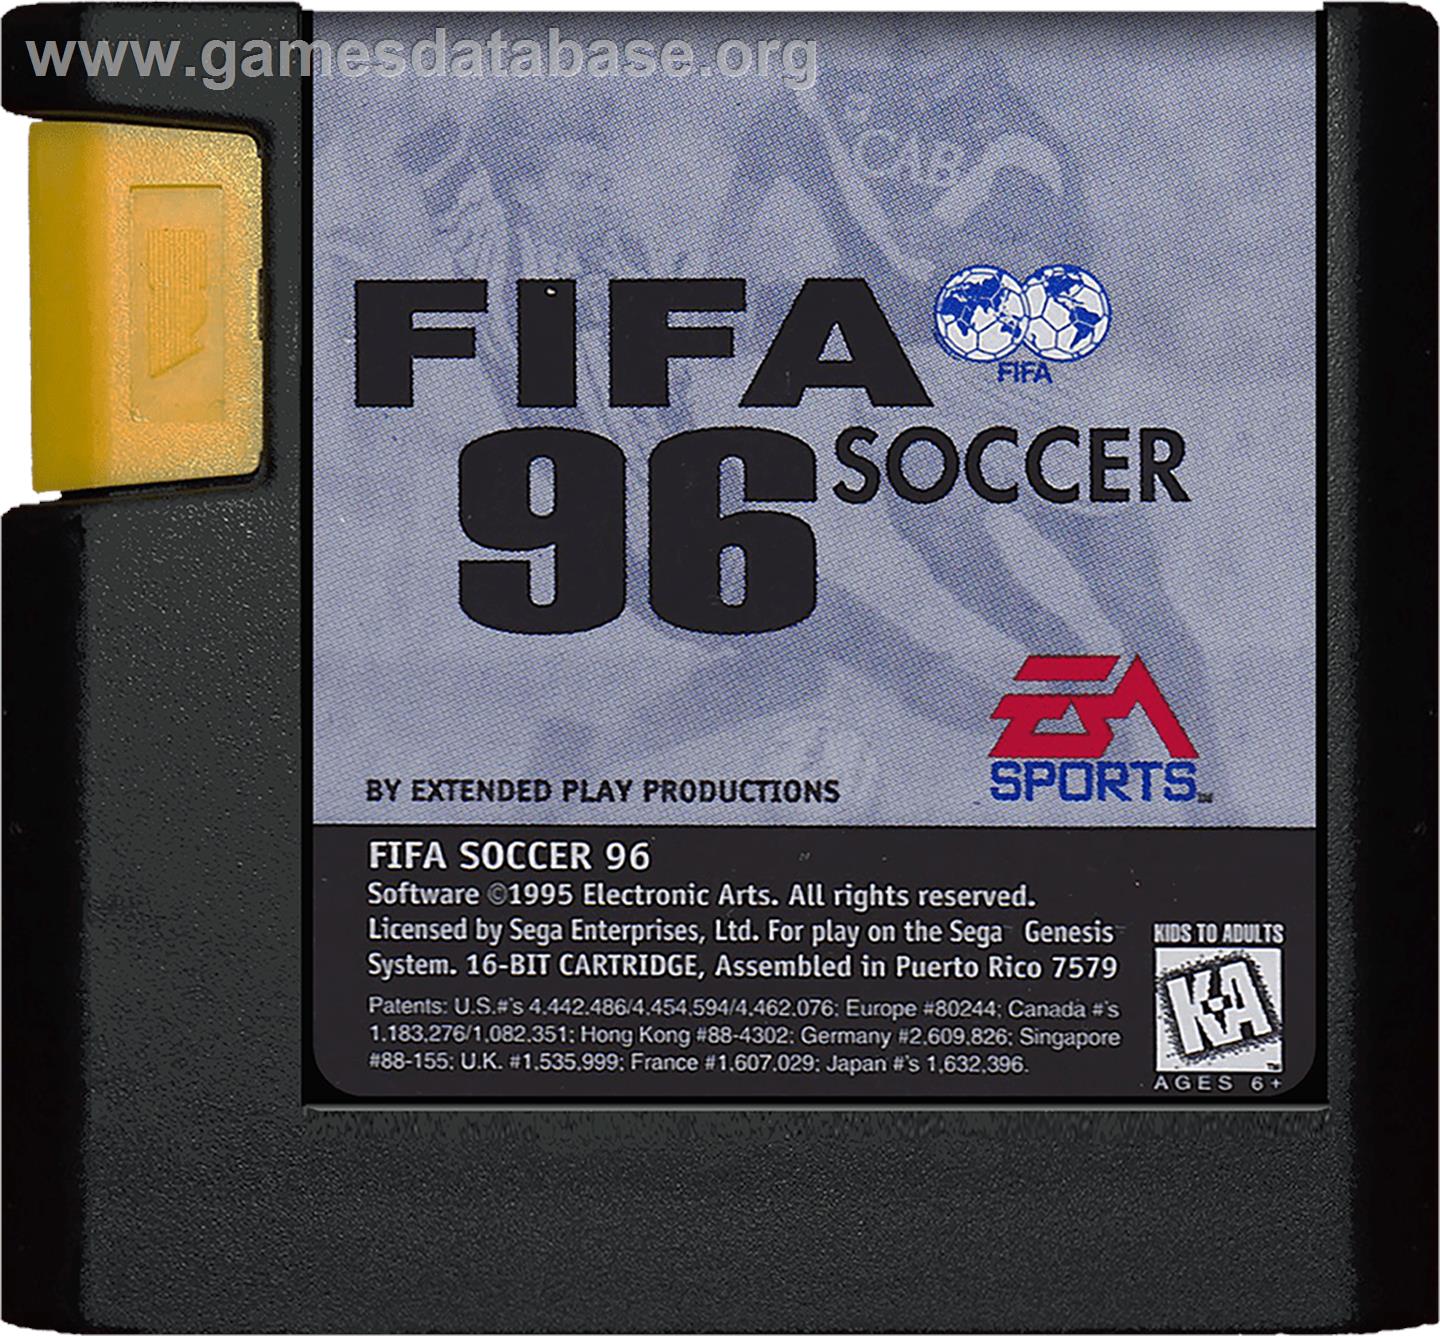 FIFA 96 - Sega Genesis - Artwork - Cartridge